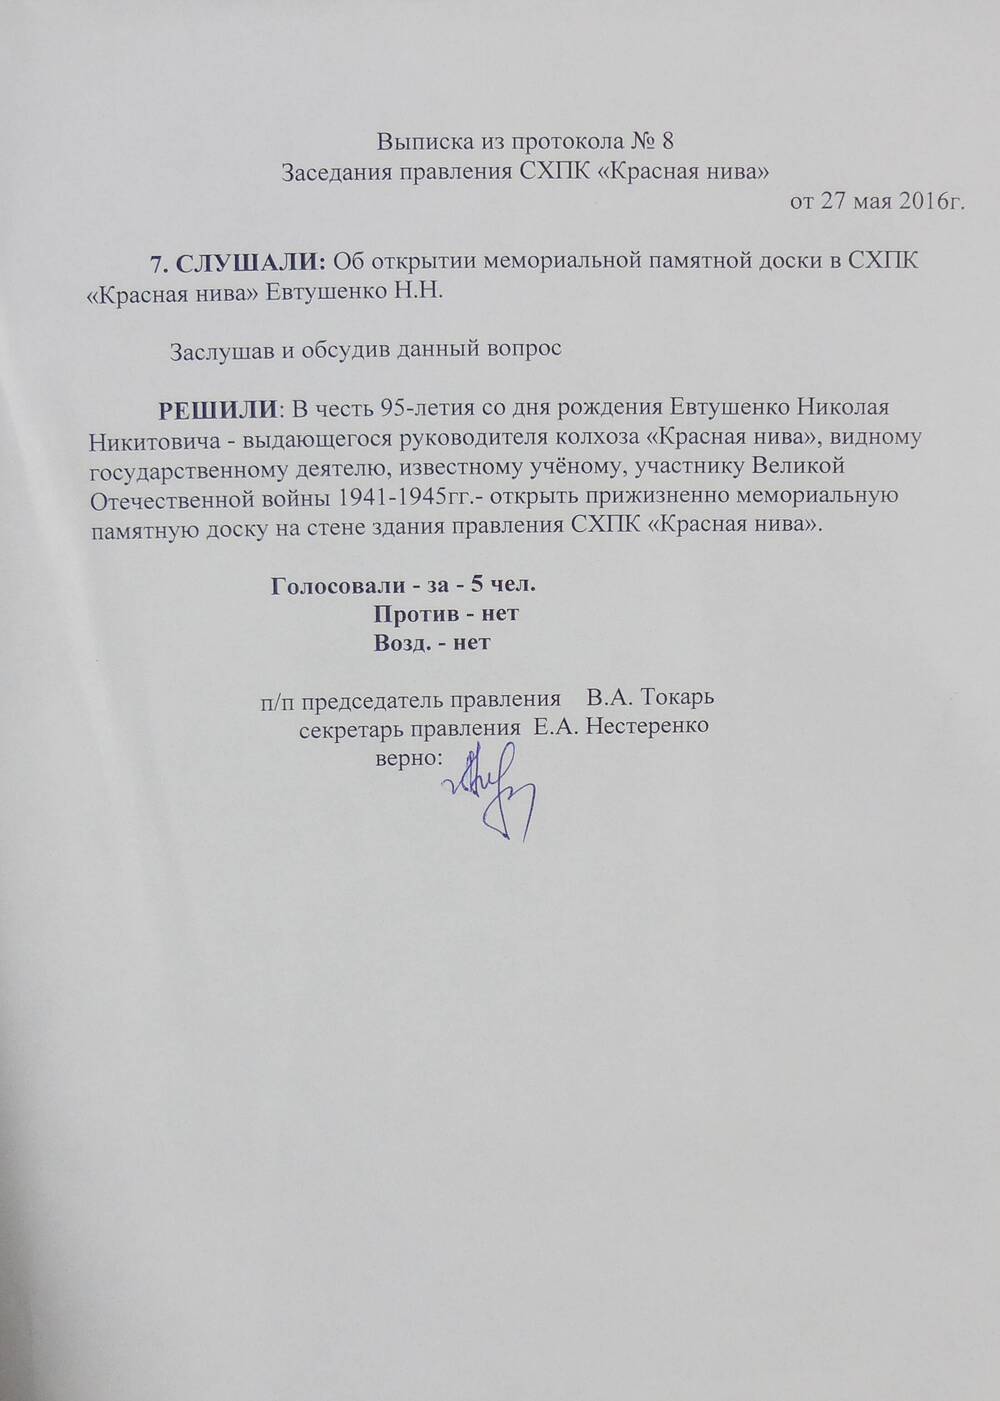 Выписка из протокола заседания правления СХПК  Красная нива .